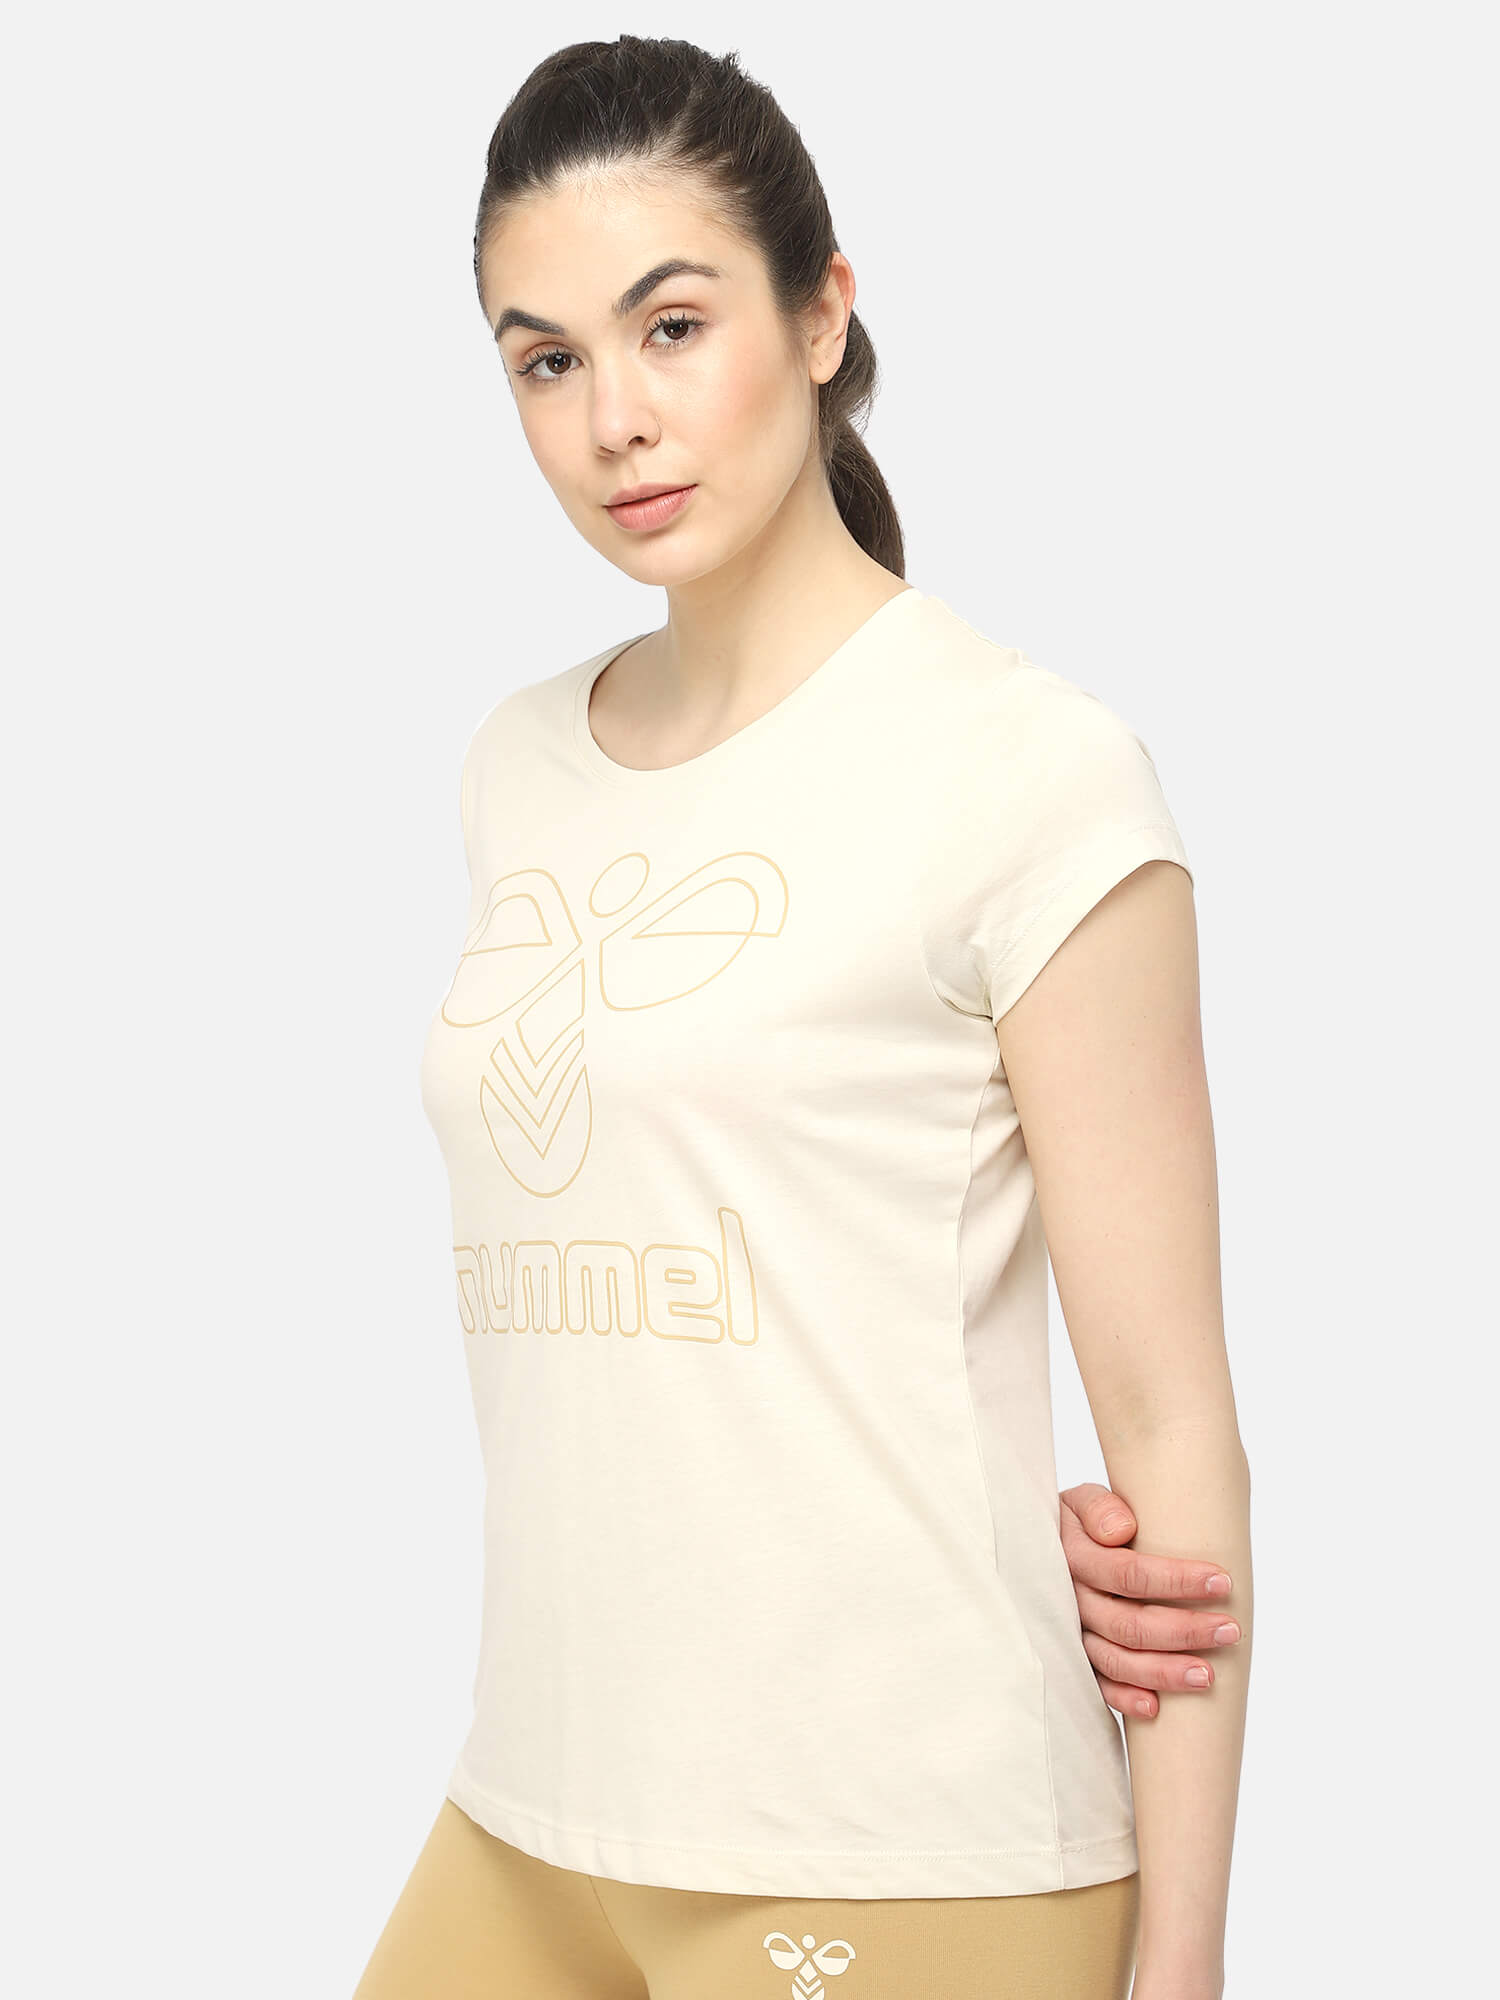 Senga White T-Shirt for Women